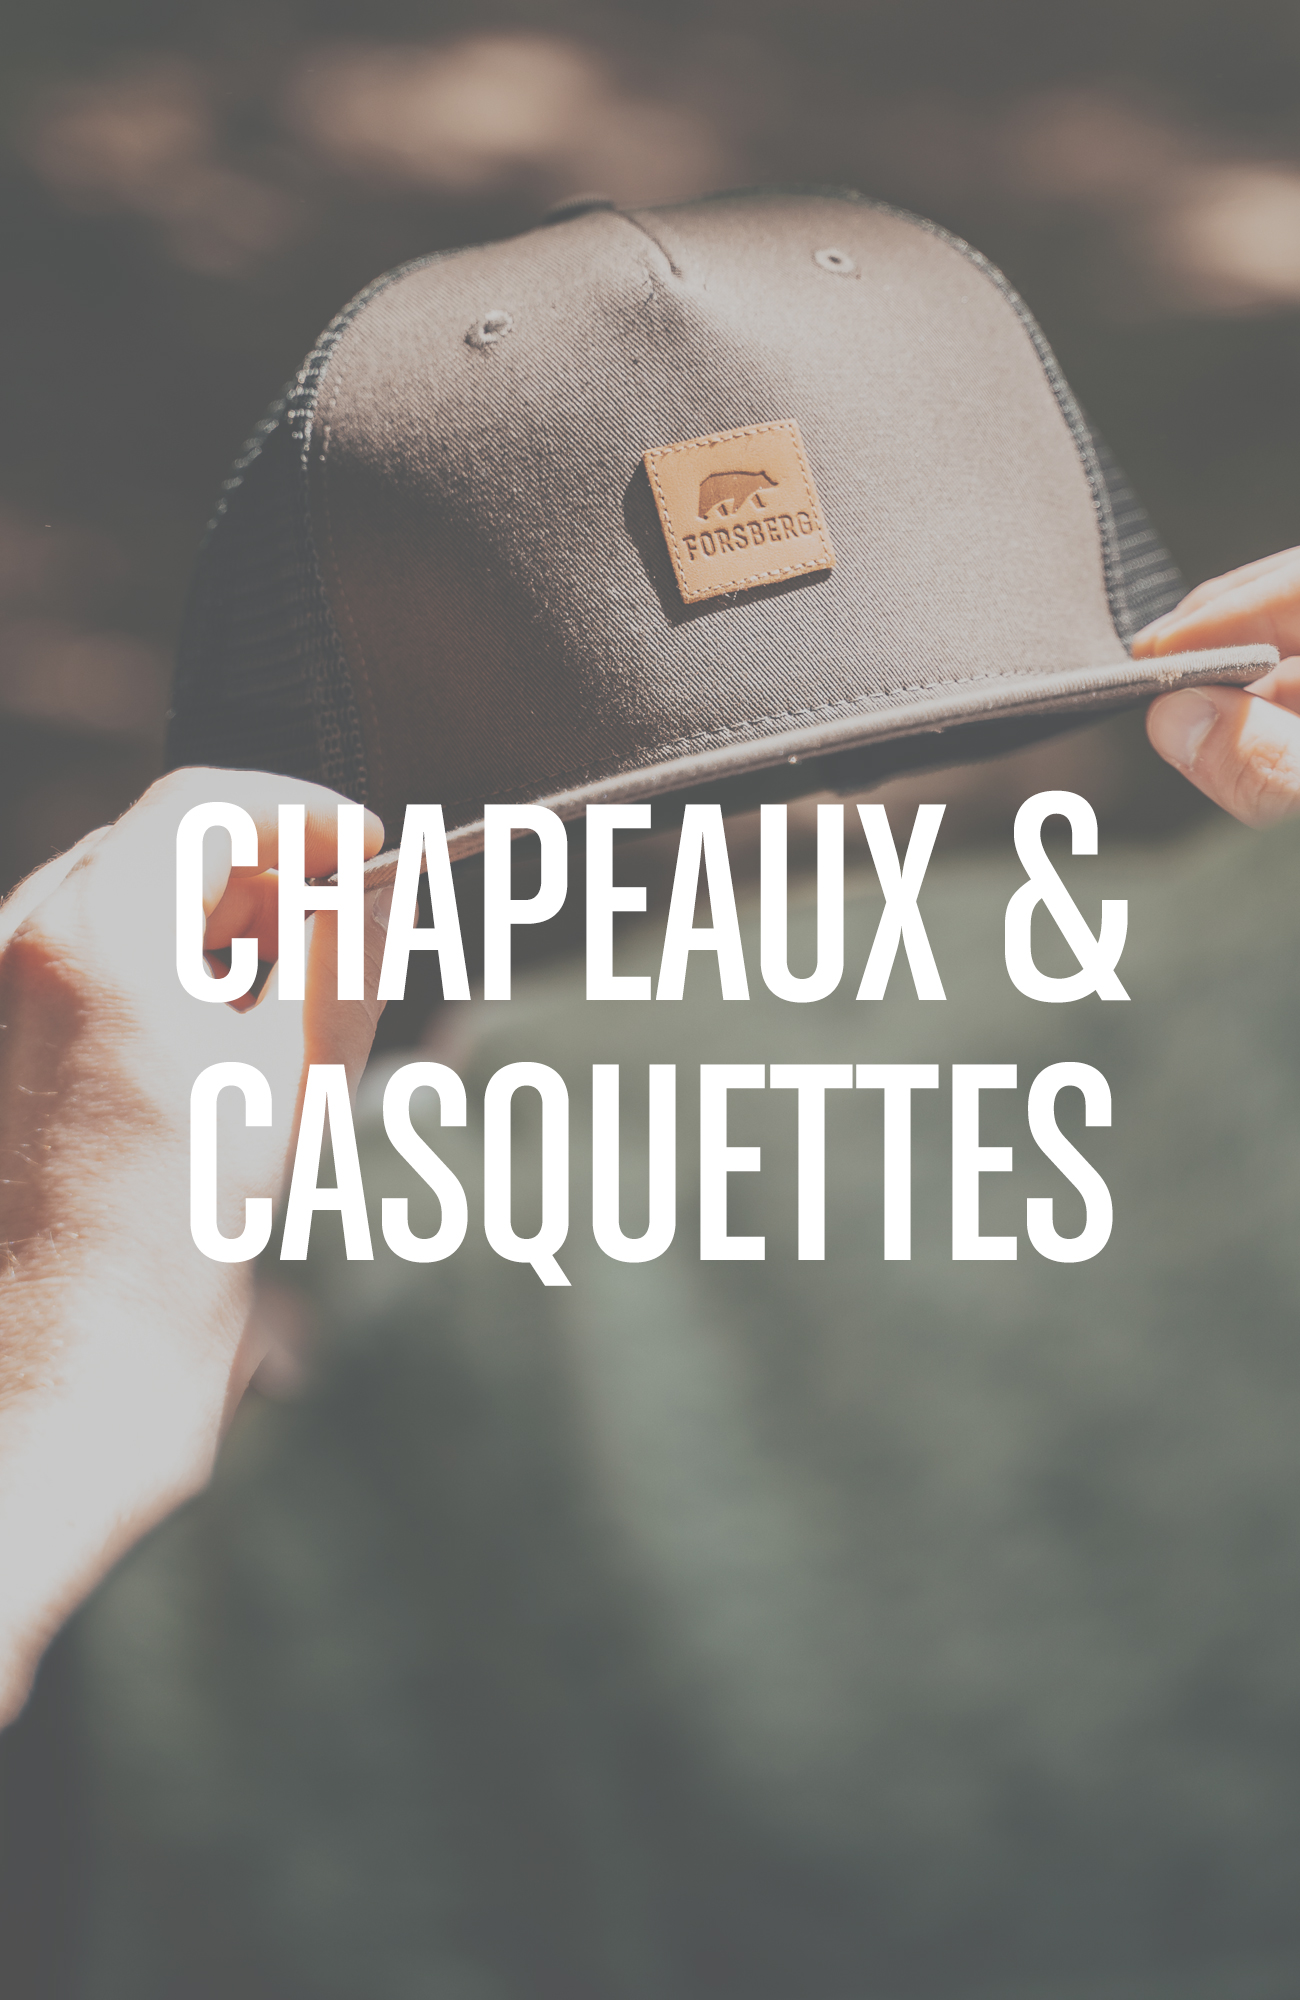 Casquettes & Chapeaux